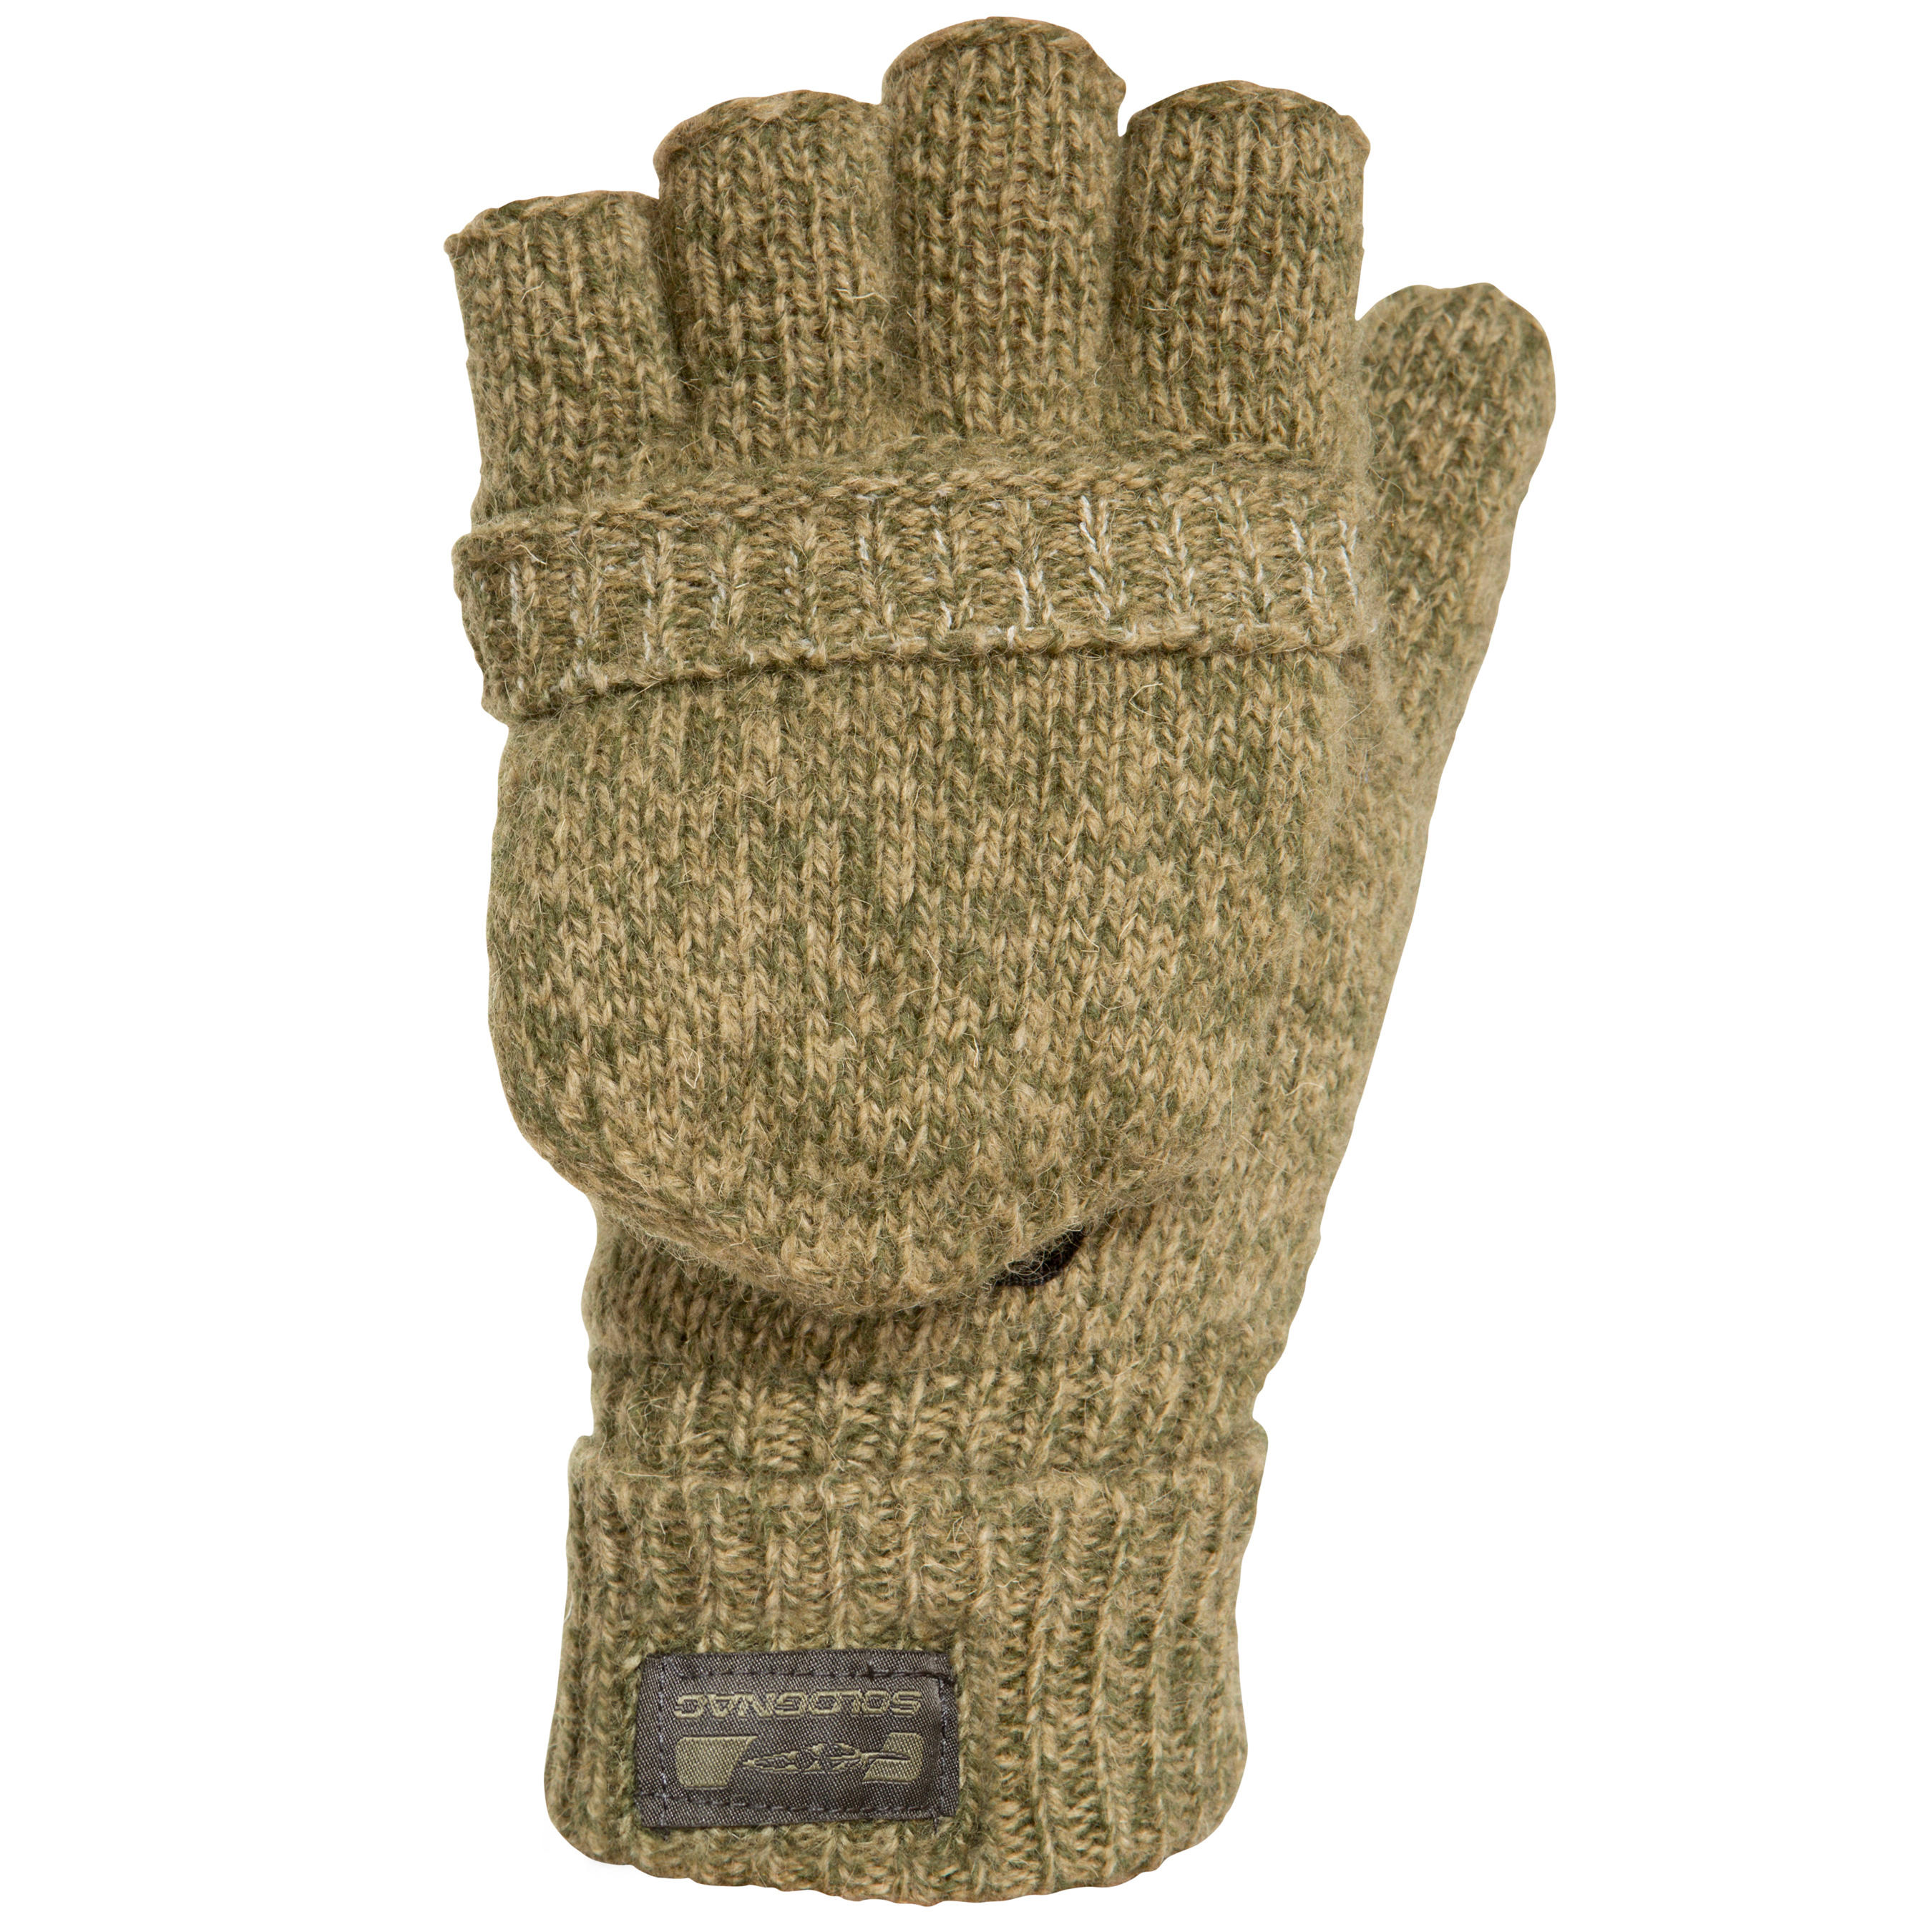 Warm Woollen Gloves with Mittens - Brown 2/3